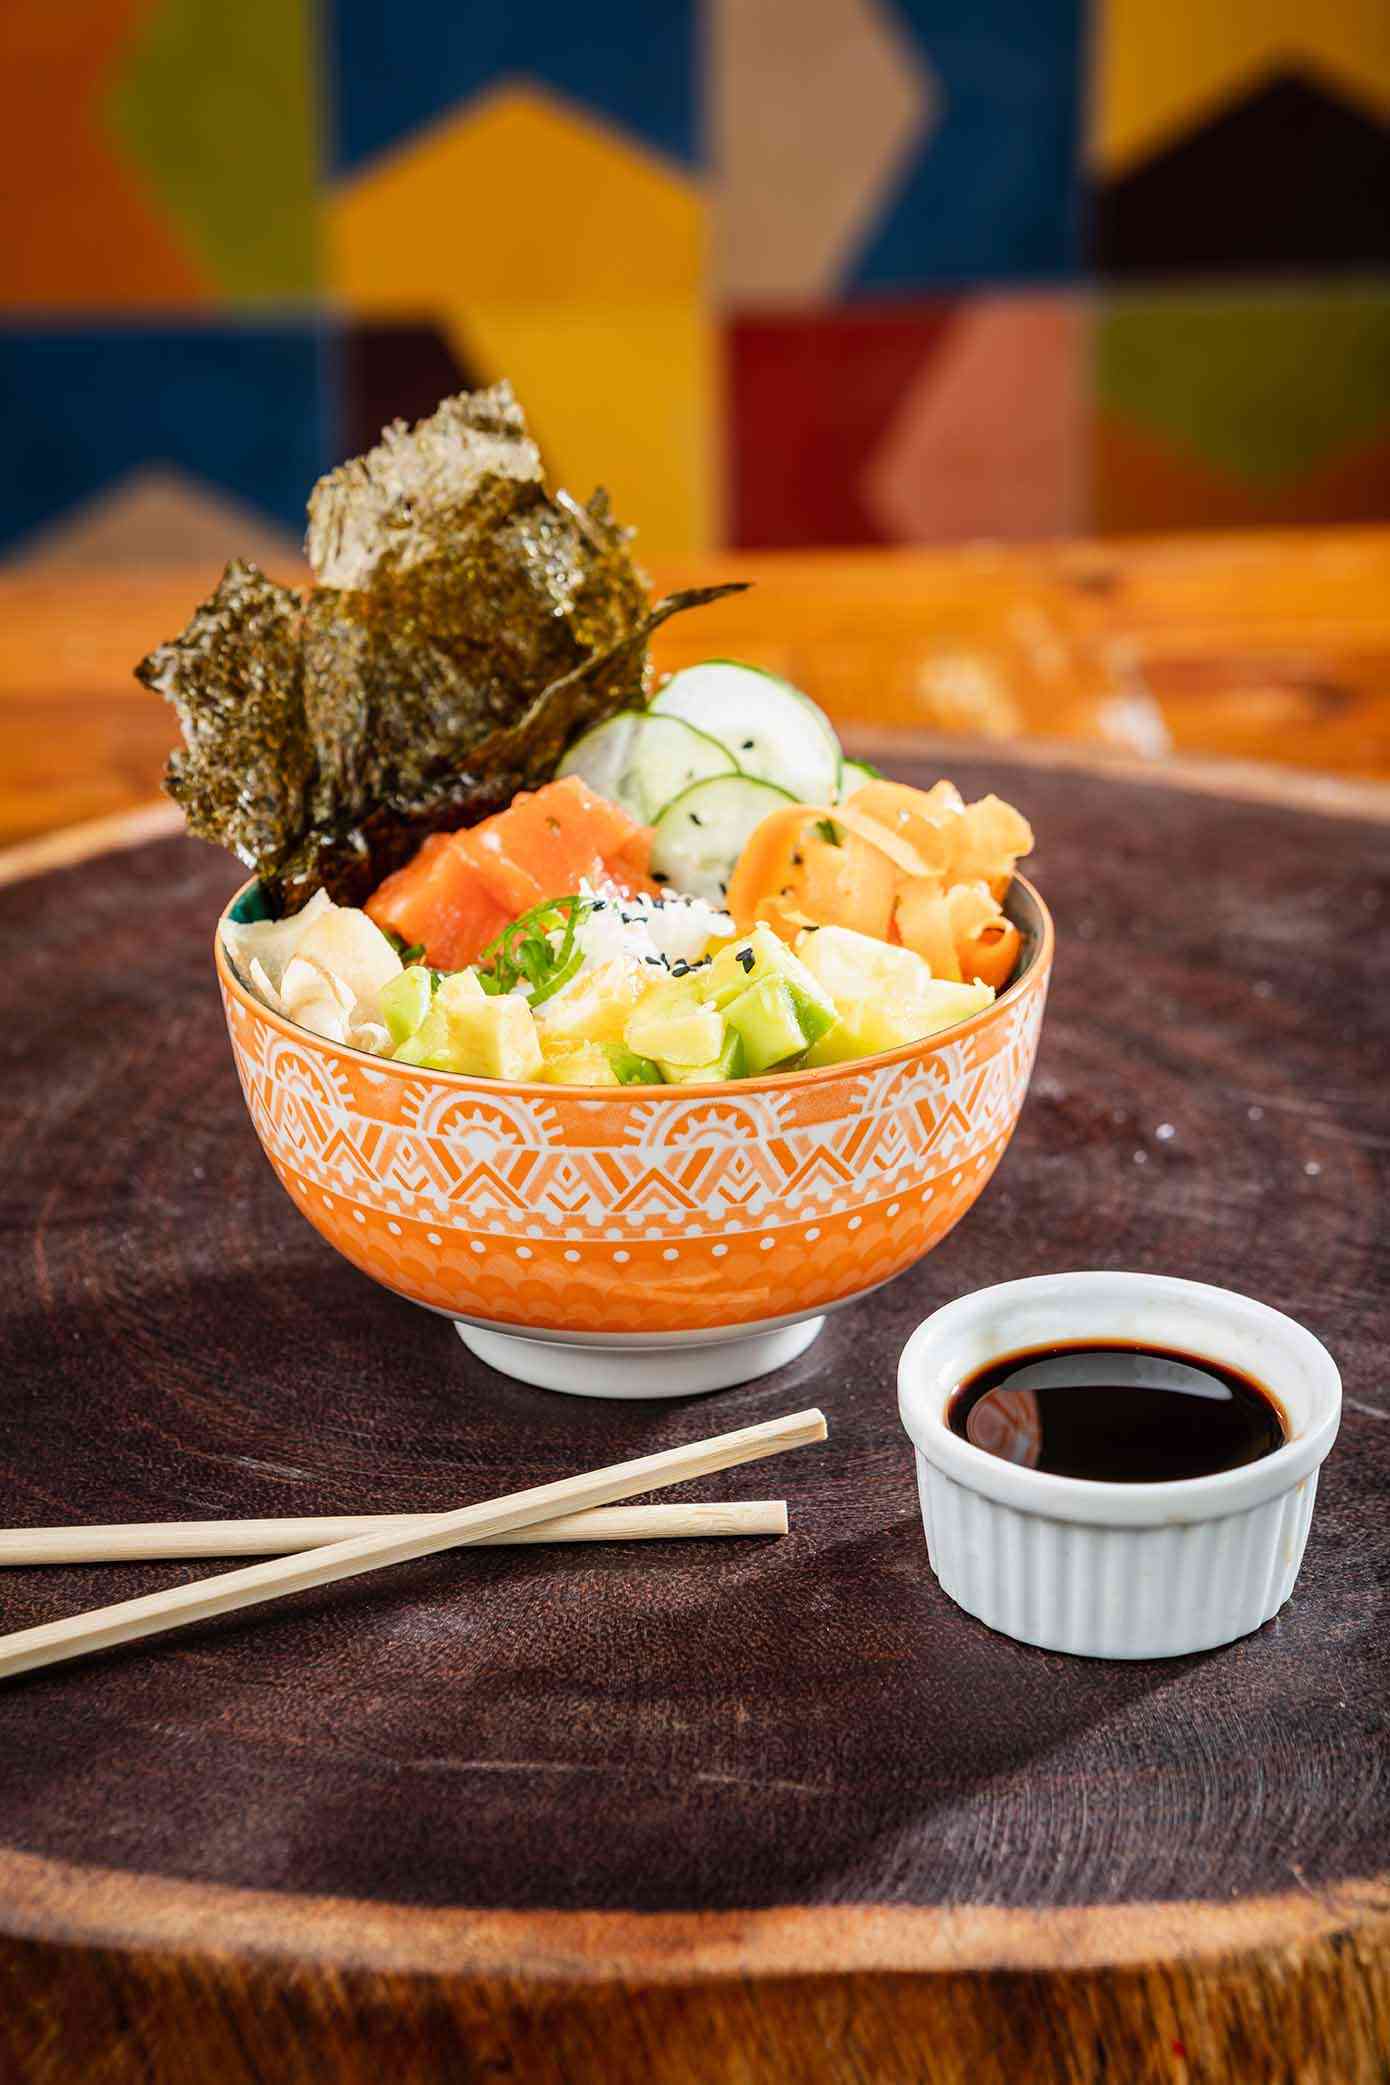 em cima de uma tábua de madeira há um poke, um bowl com arroz, alga, shoio, hachi e salmão